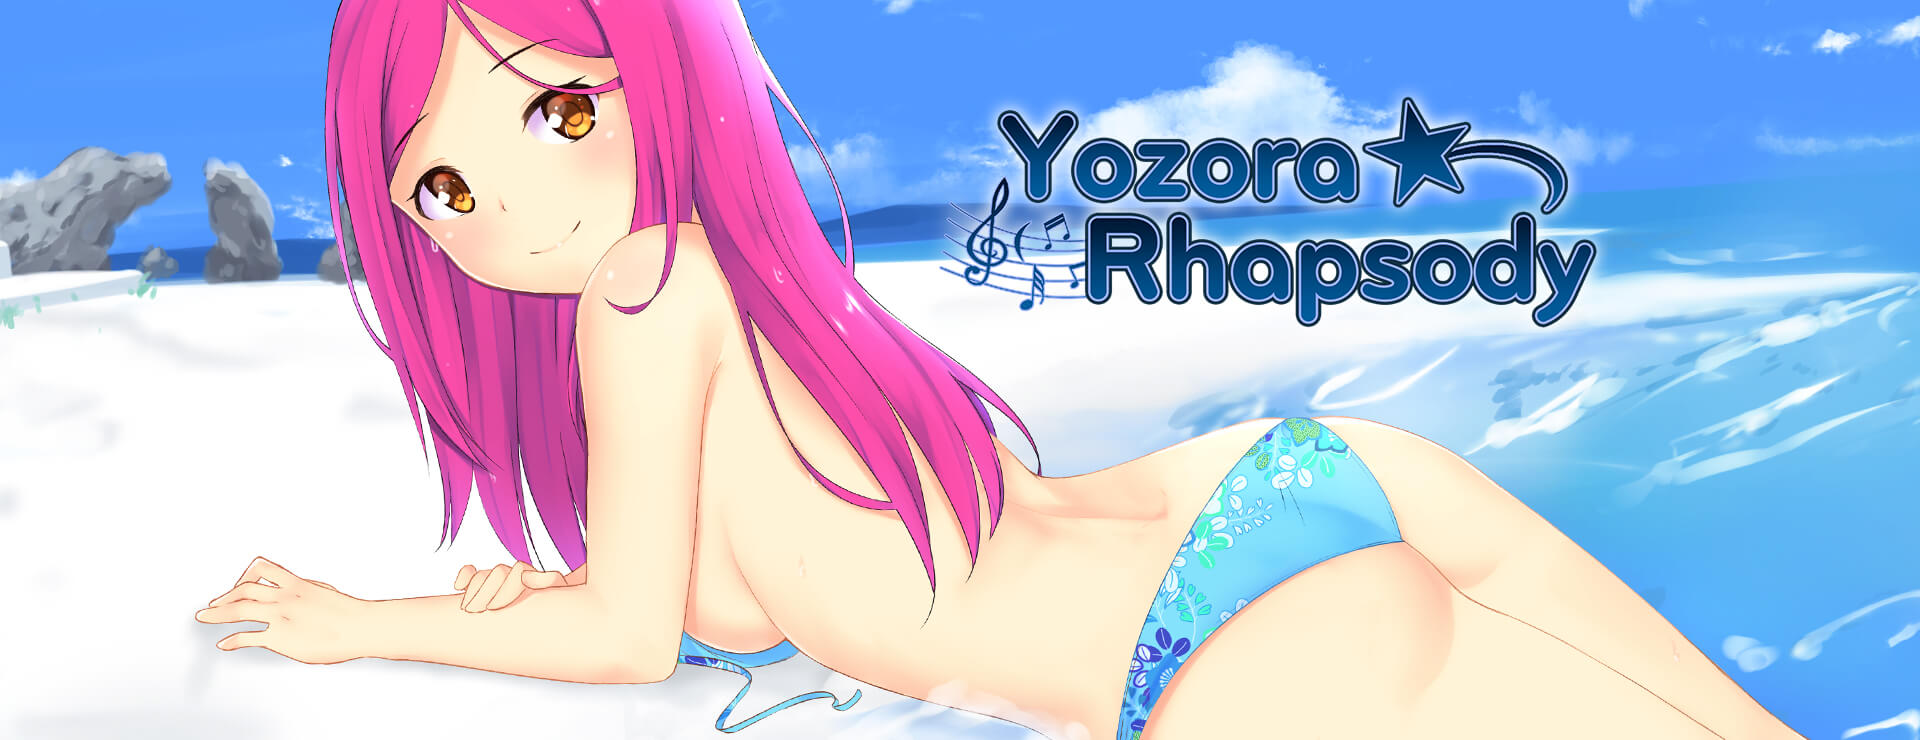 Yozora Rhapsody - Powieść wizualna Gra